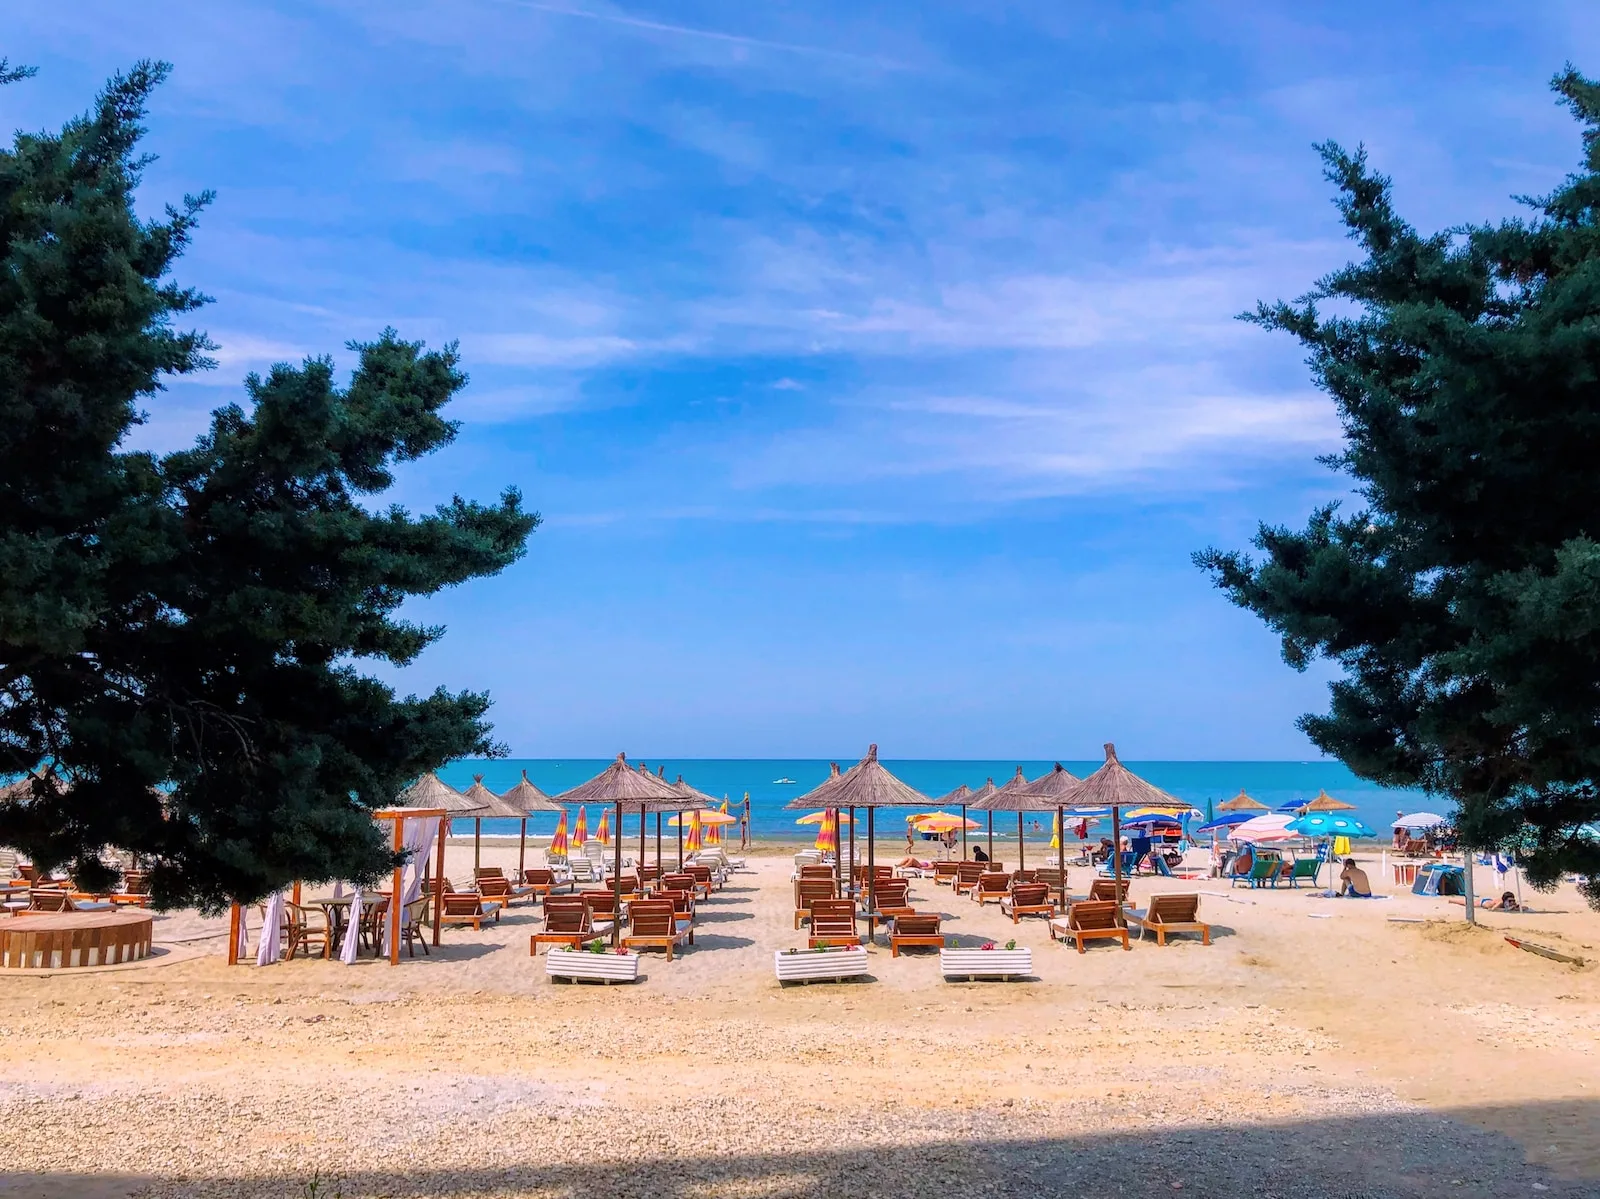 Una fotografia panoramica della spiaggia di Durres, Albania, che cattura la bellezza naturale e la tranquillità di questo popolare destino balneare.